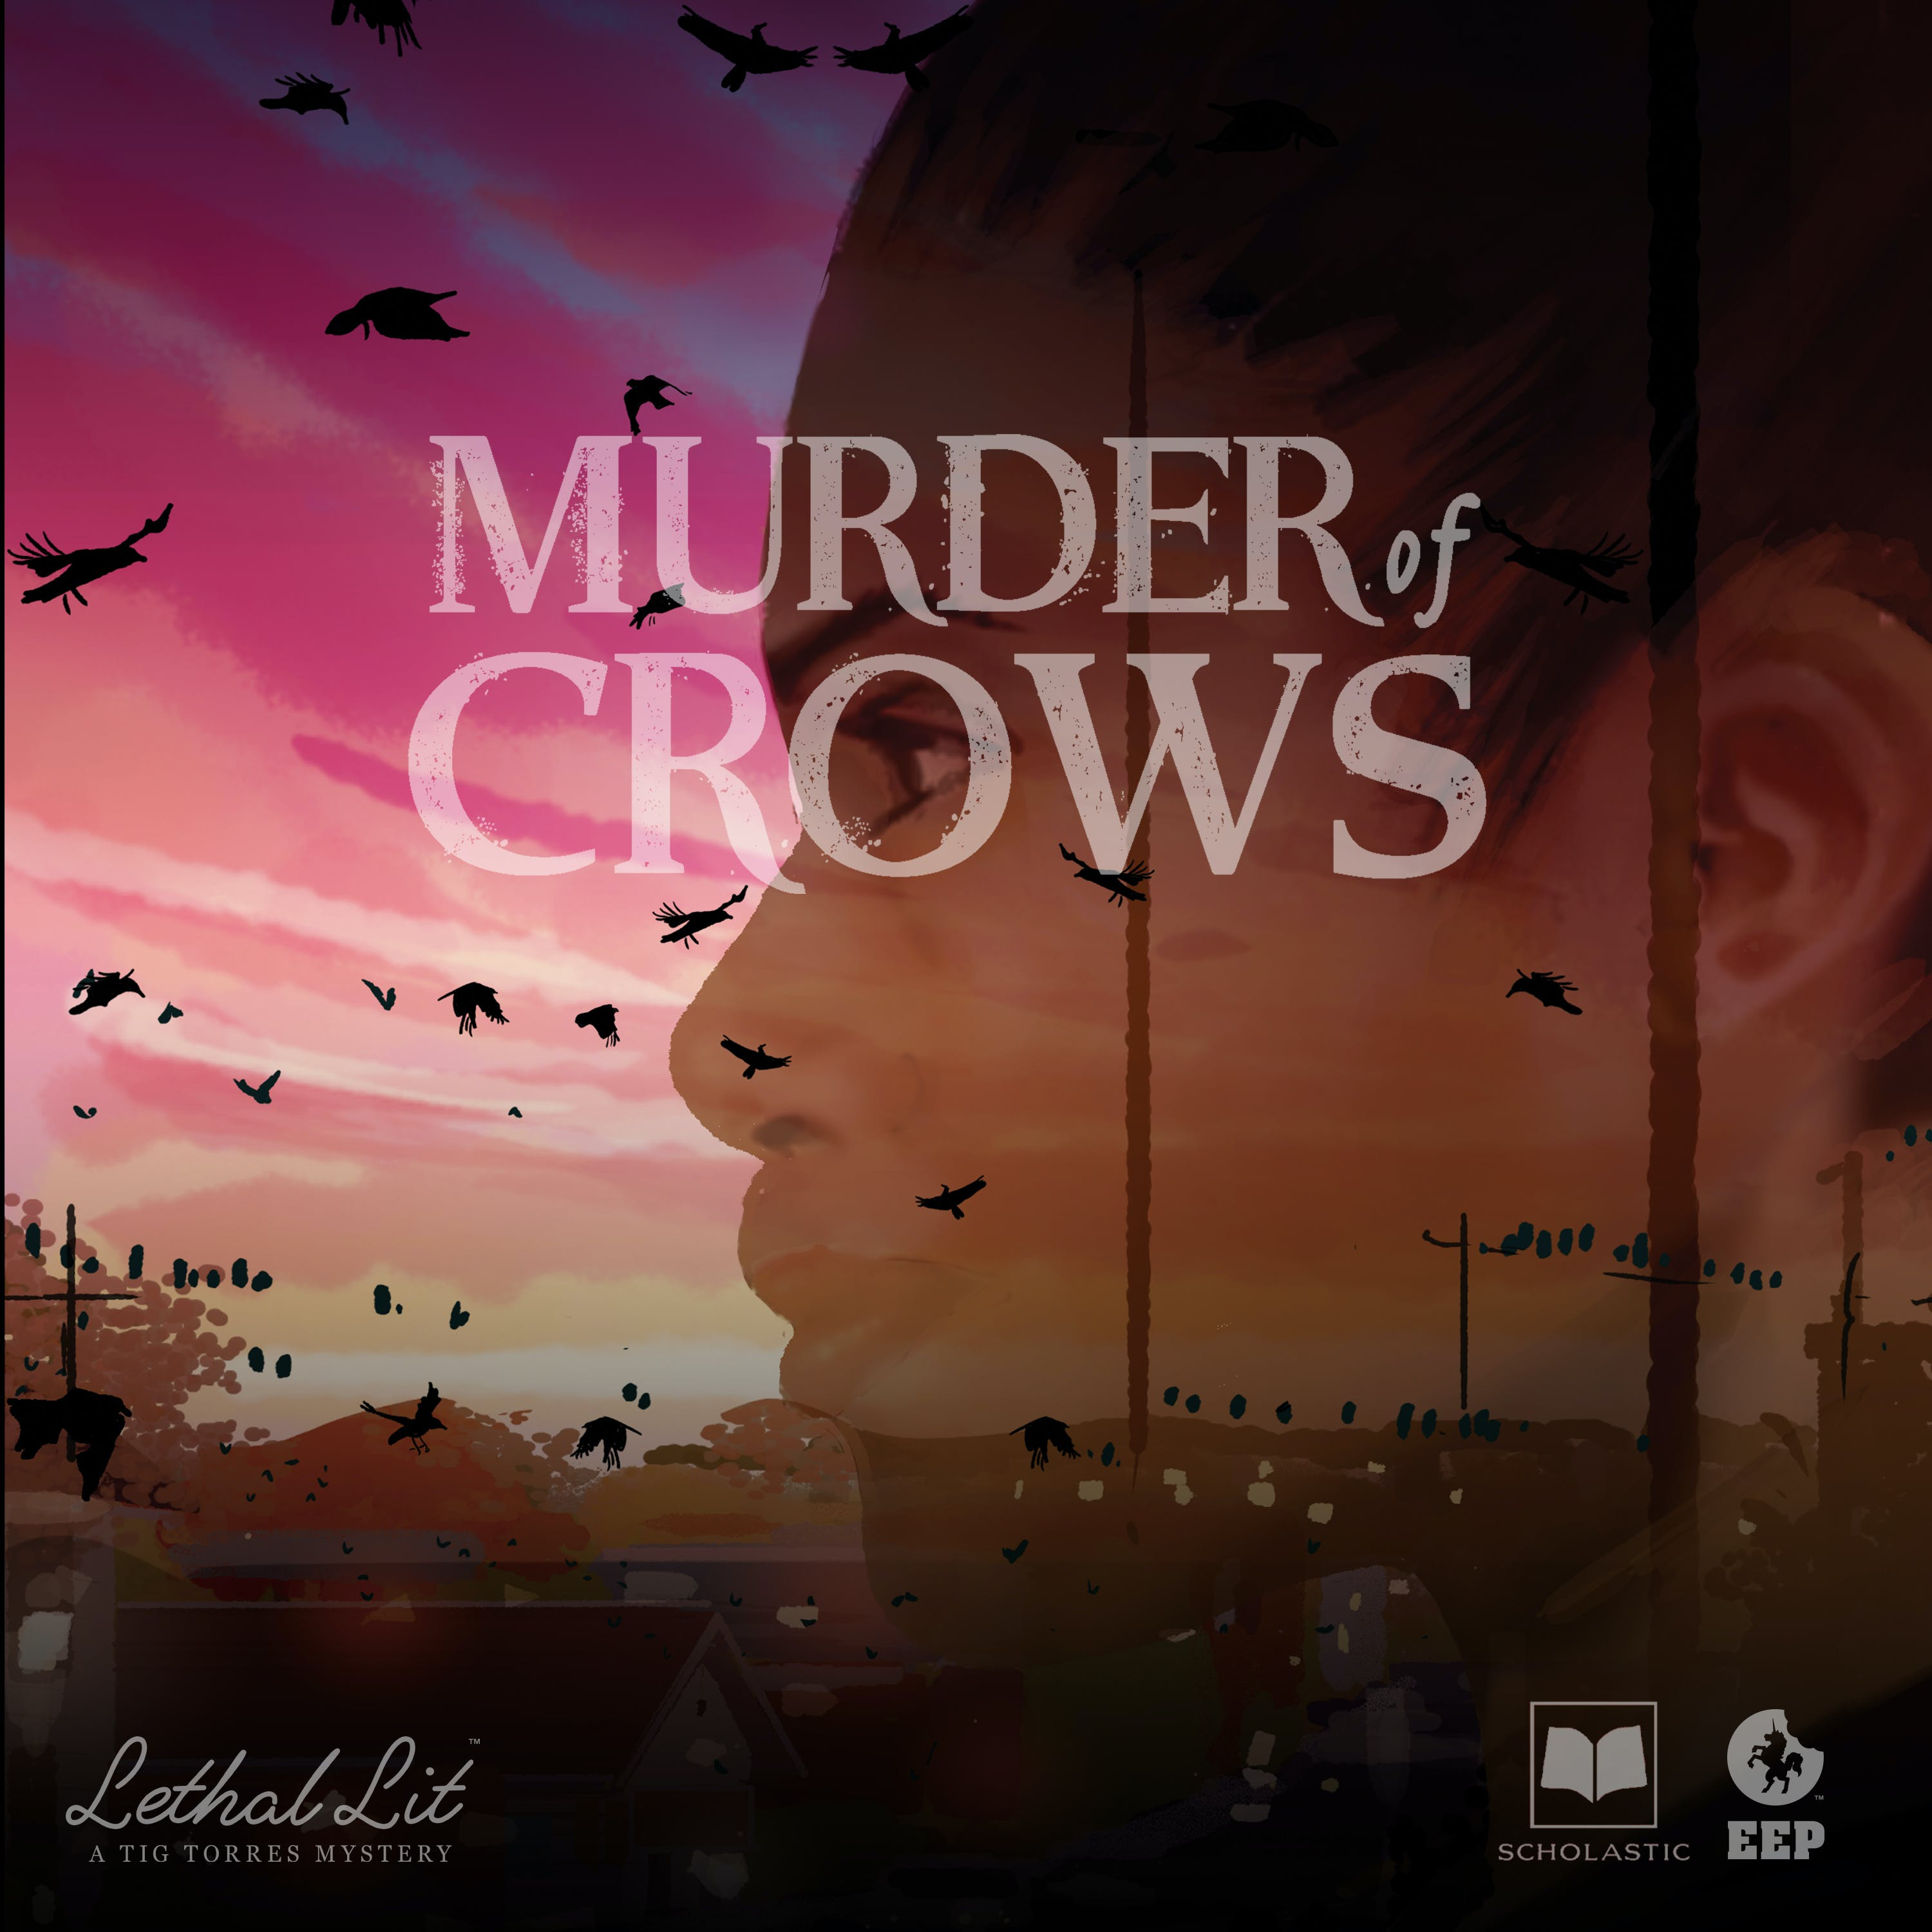 Sneak Peek — Lethal Lit: "Murder of Crows" Audiobook